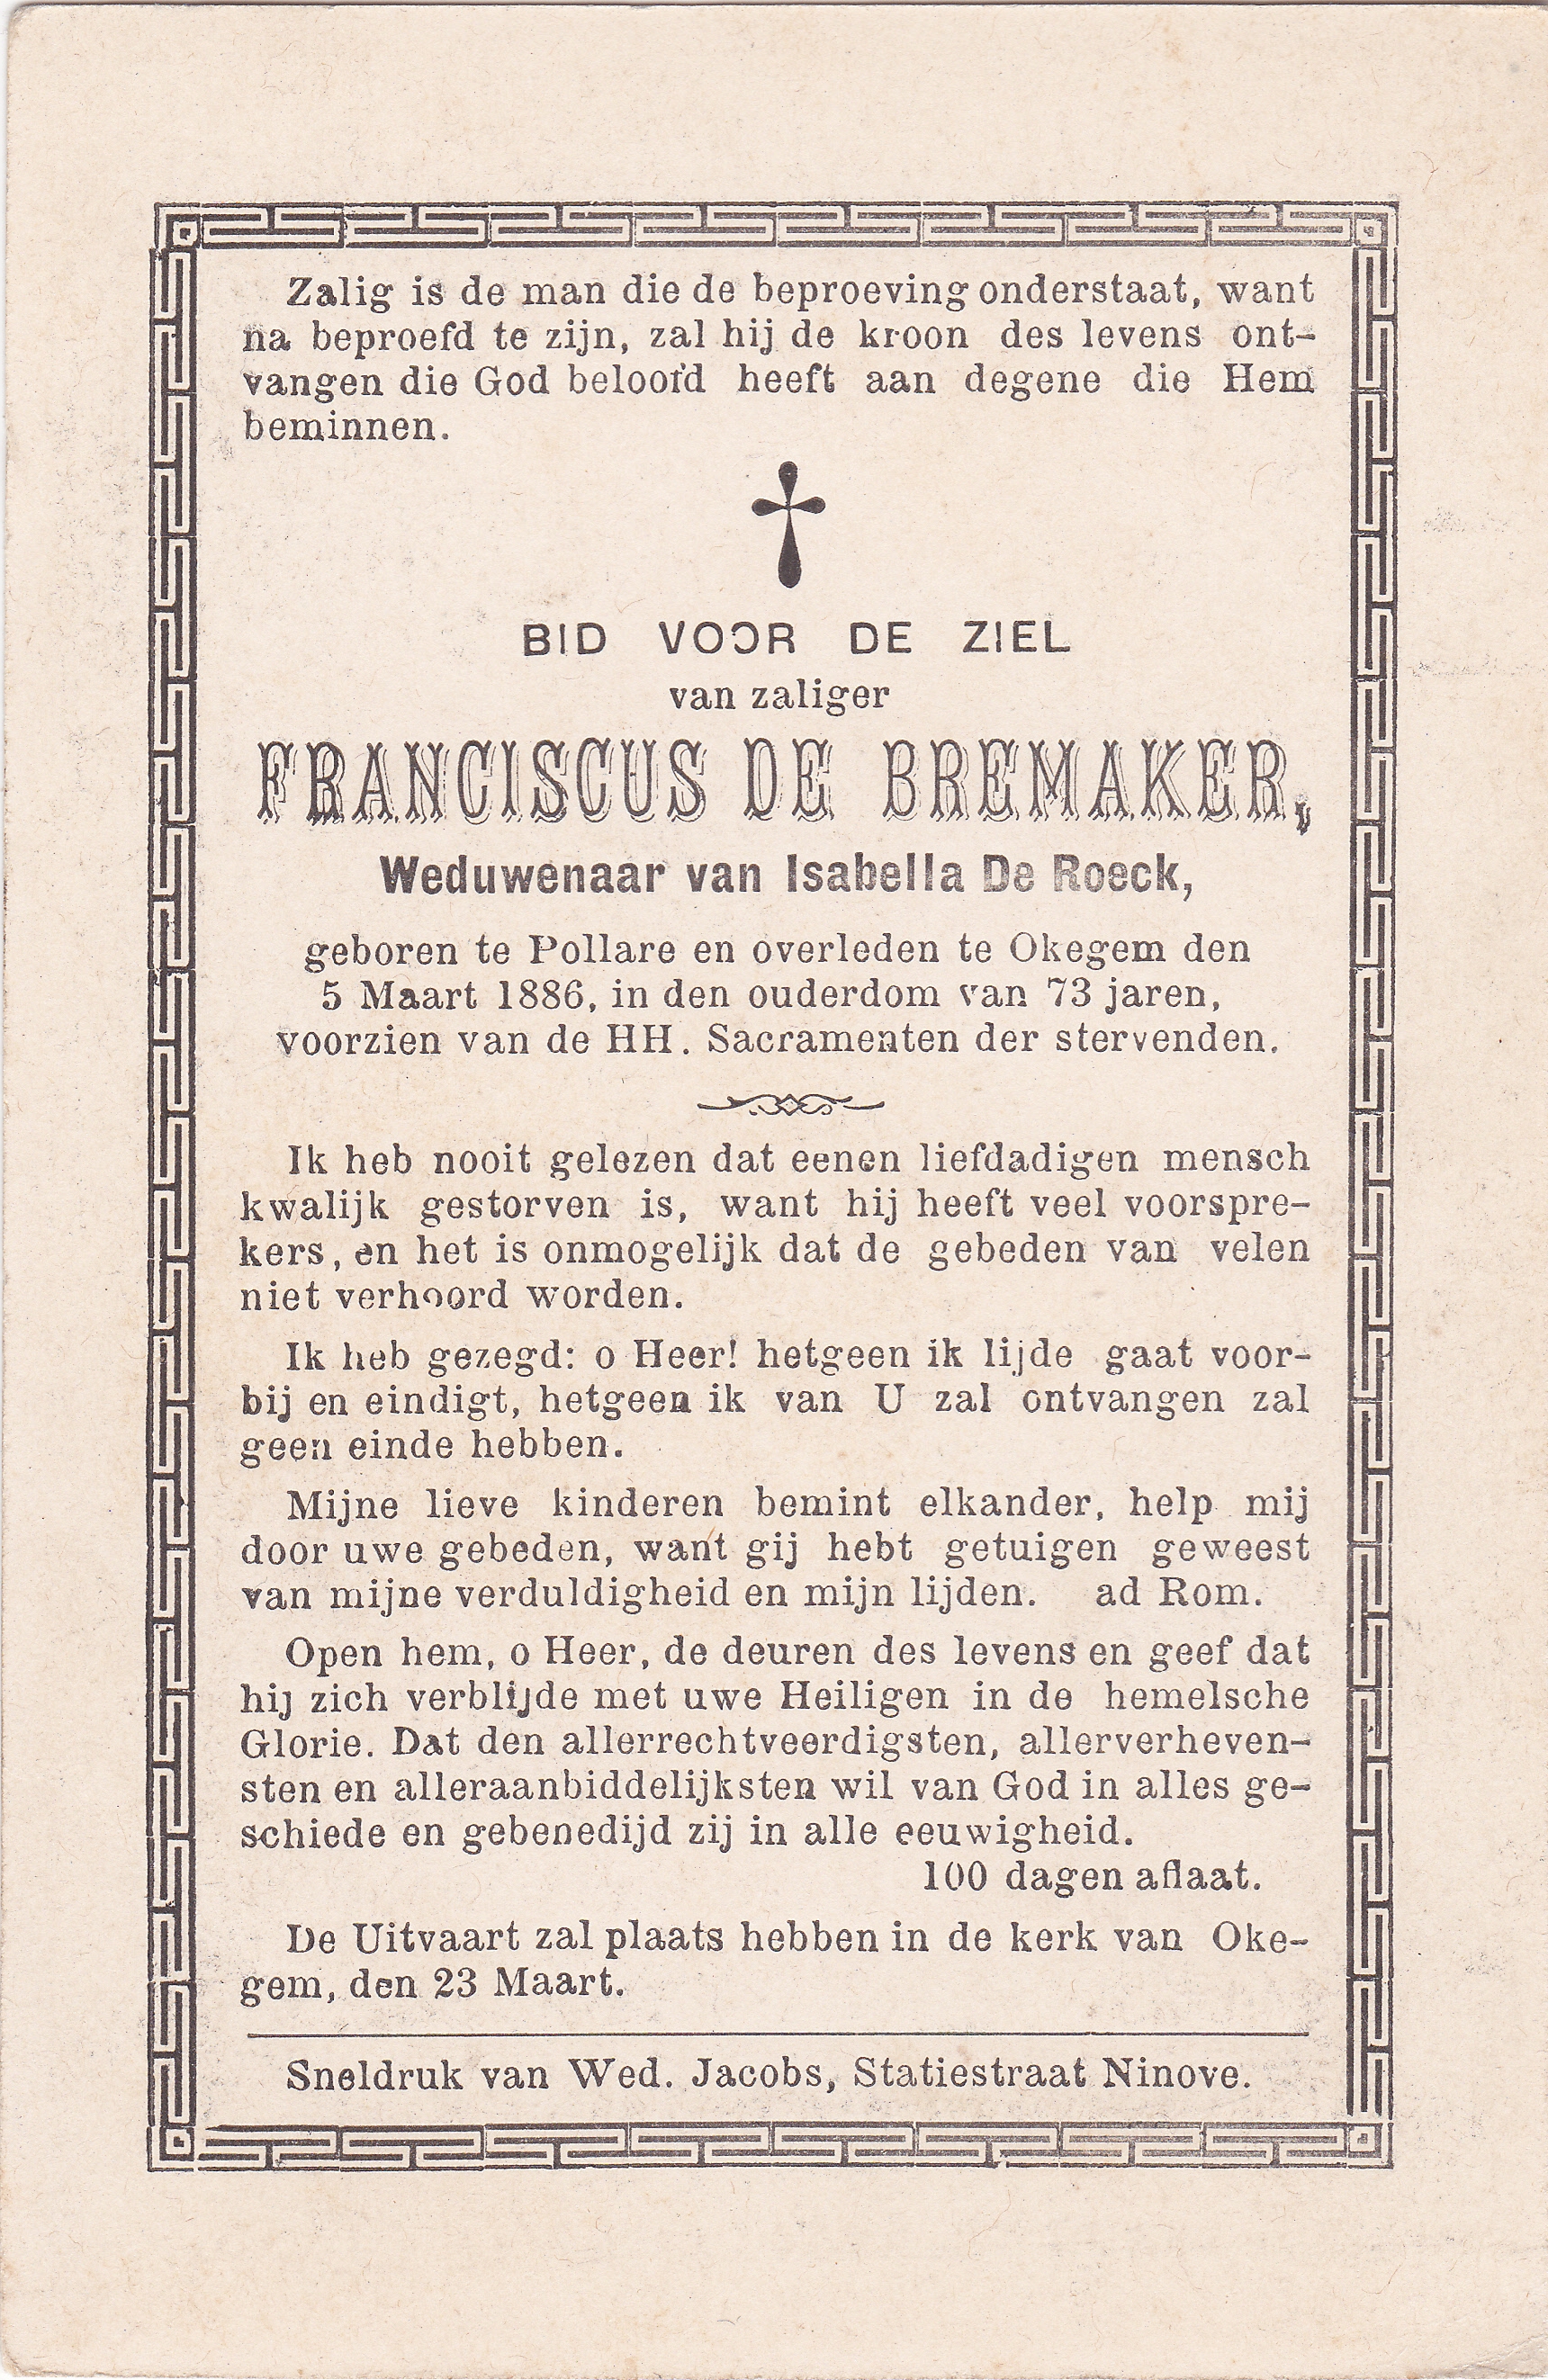 De Bremaker Franciscus